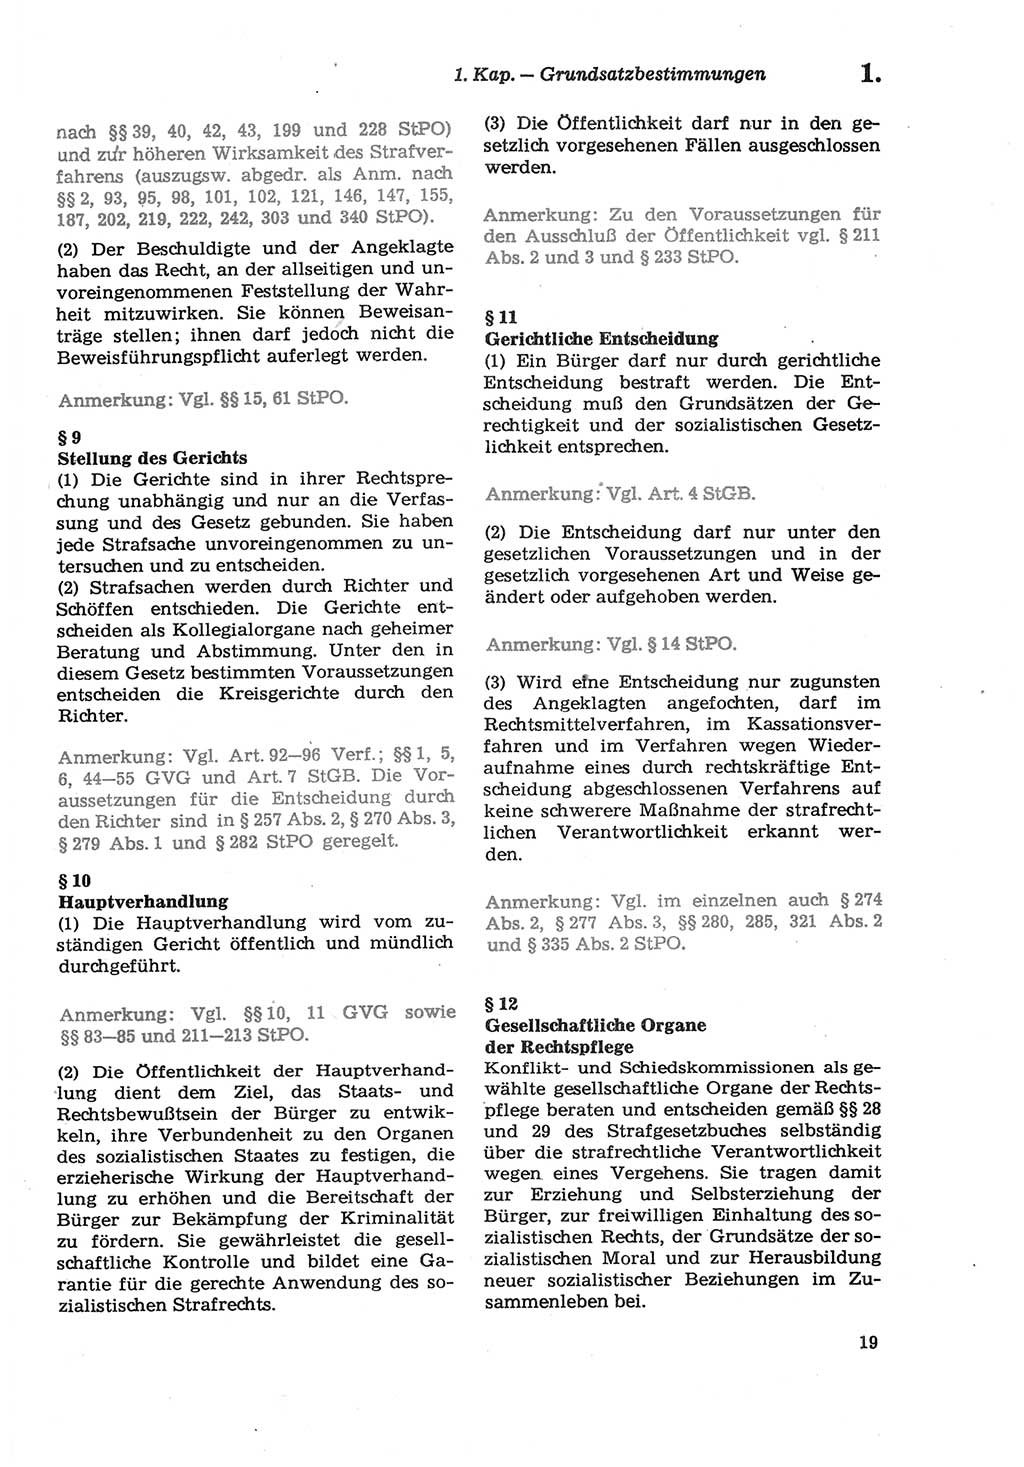 Strafprozeßordnung (StPO) der Deutschen Demokratischen Republik (DDR) sowie angrenzende Gesetze und Bestimmungen 1979, Seite 19 (StPO DDR Ges. Best. 1979, S. 19)